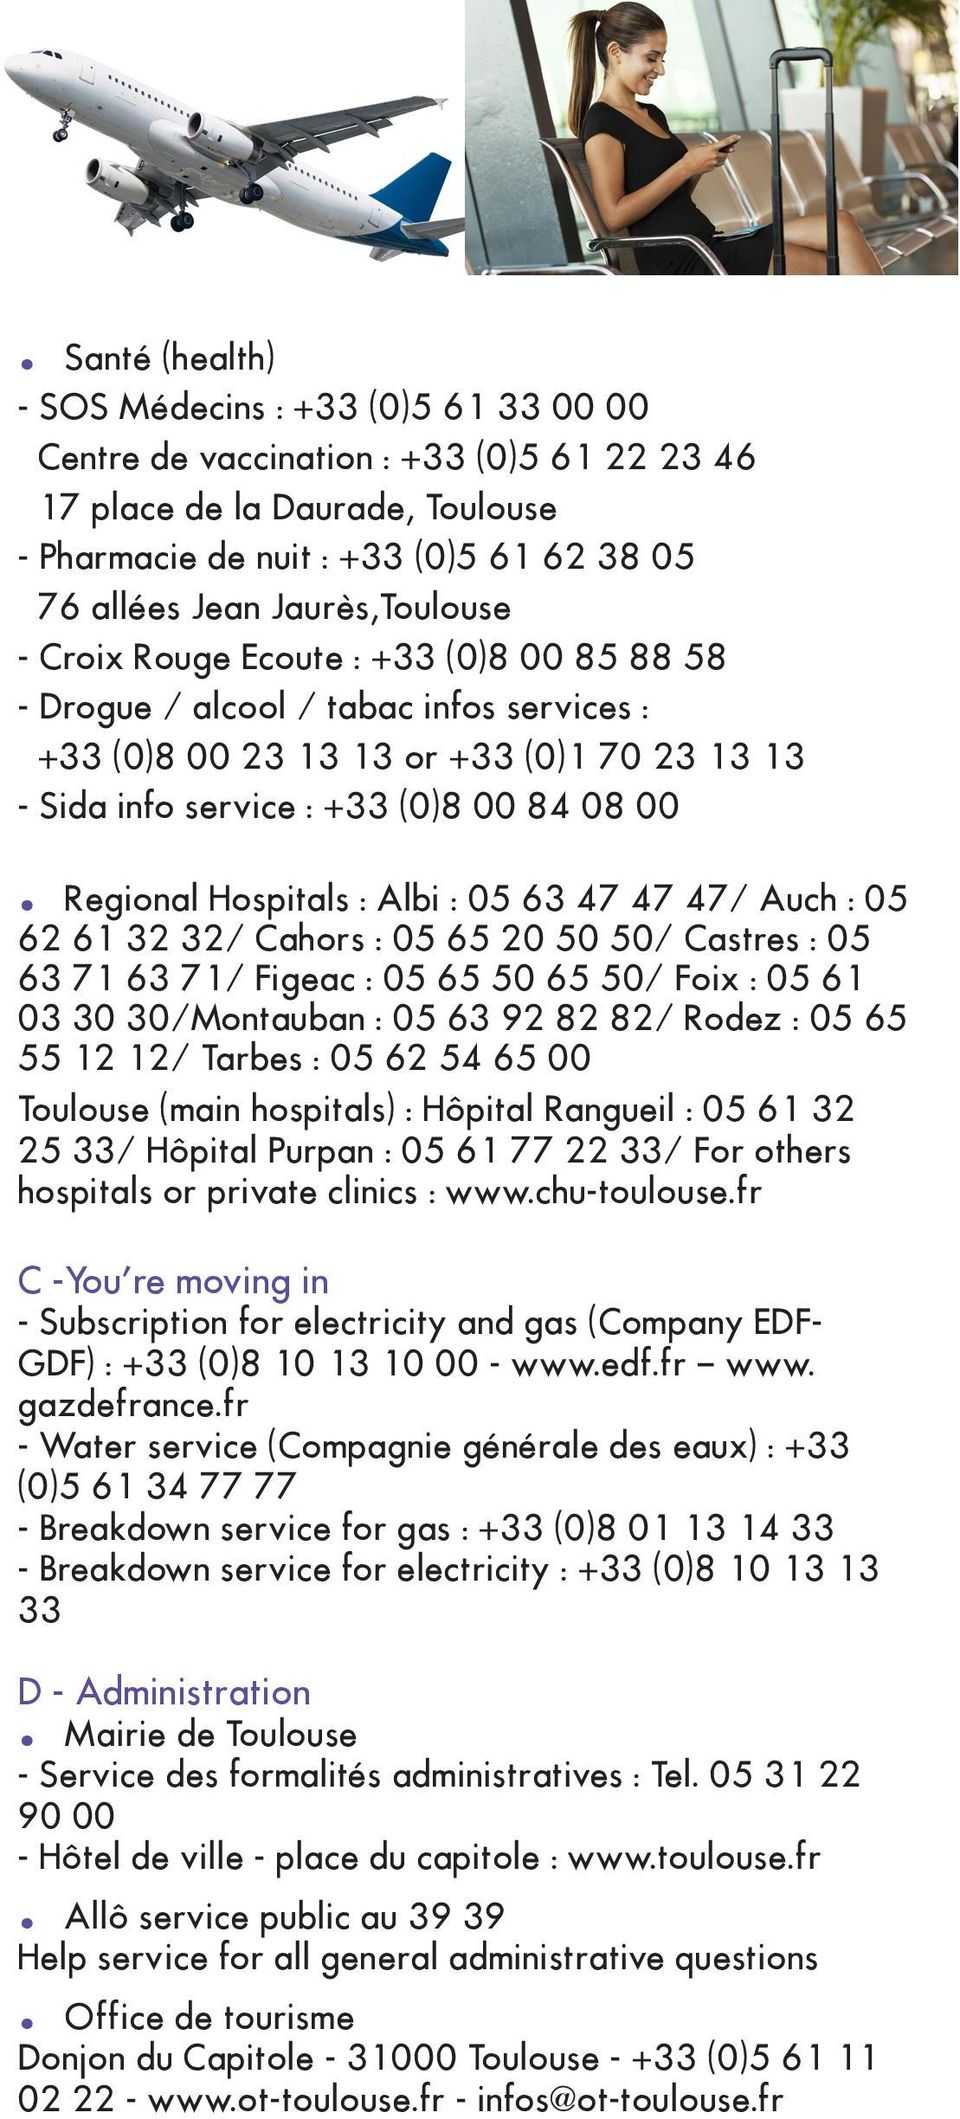 Regional Hospitals : Albi : 05 63 47 47 47/ Auch : 05 62 61 32 32/ Cahors : 05 65 20 50 50/ Castres : 05 63 71 63 71/ Figeac : 05 65 50 65 50/ Foix : 05 61 03 30 30/Montauban : 05 63 92 82 82/ Rodez